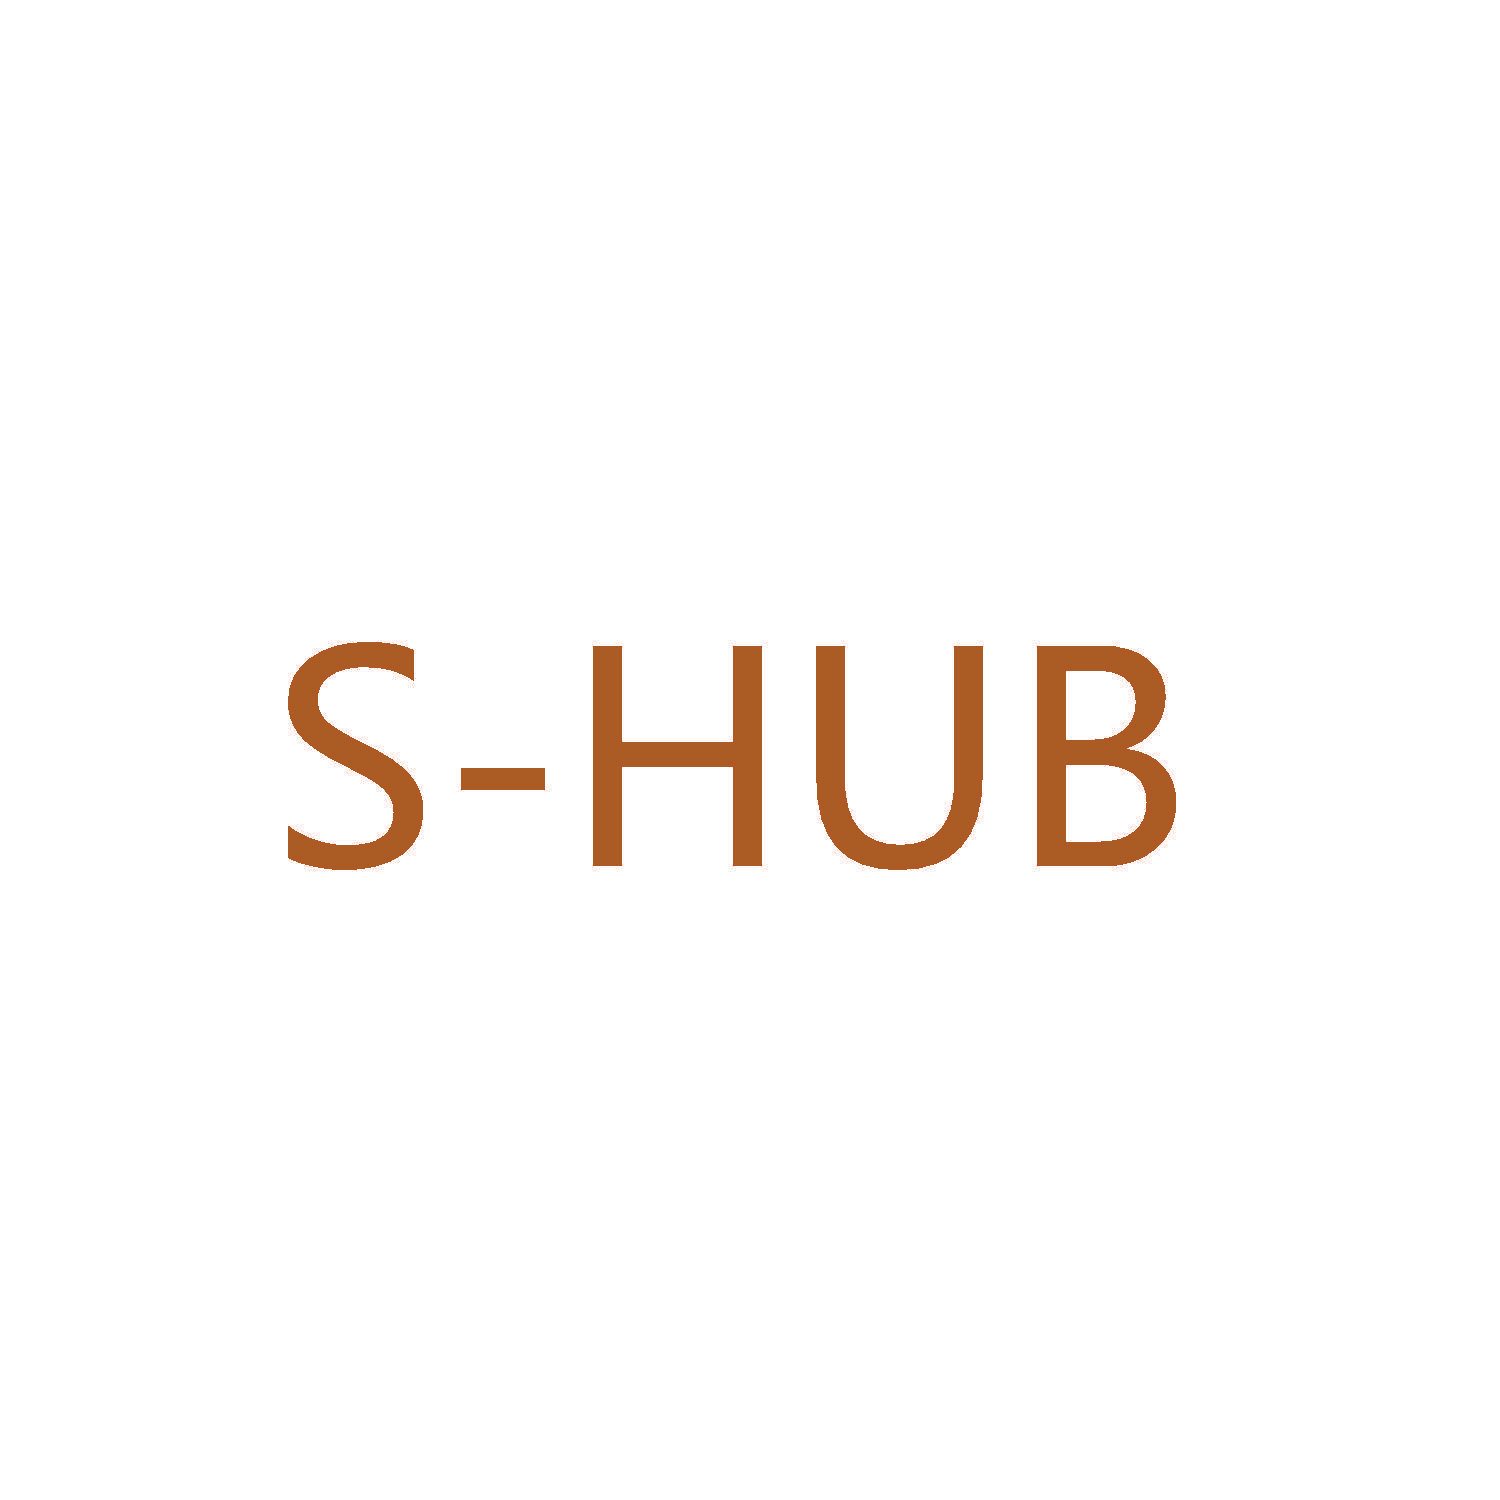 S-HUB